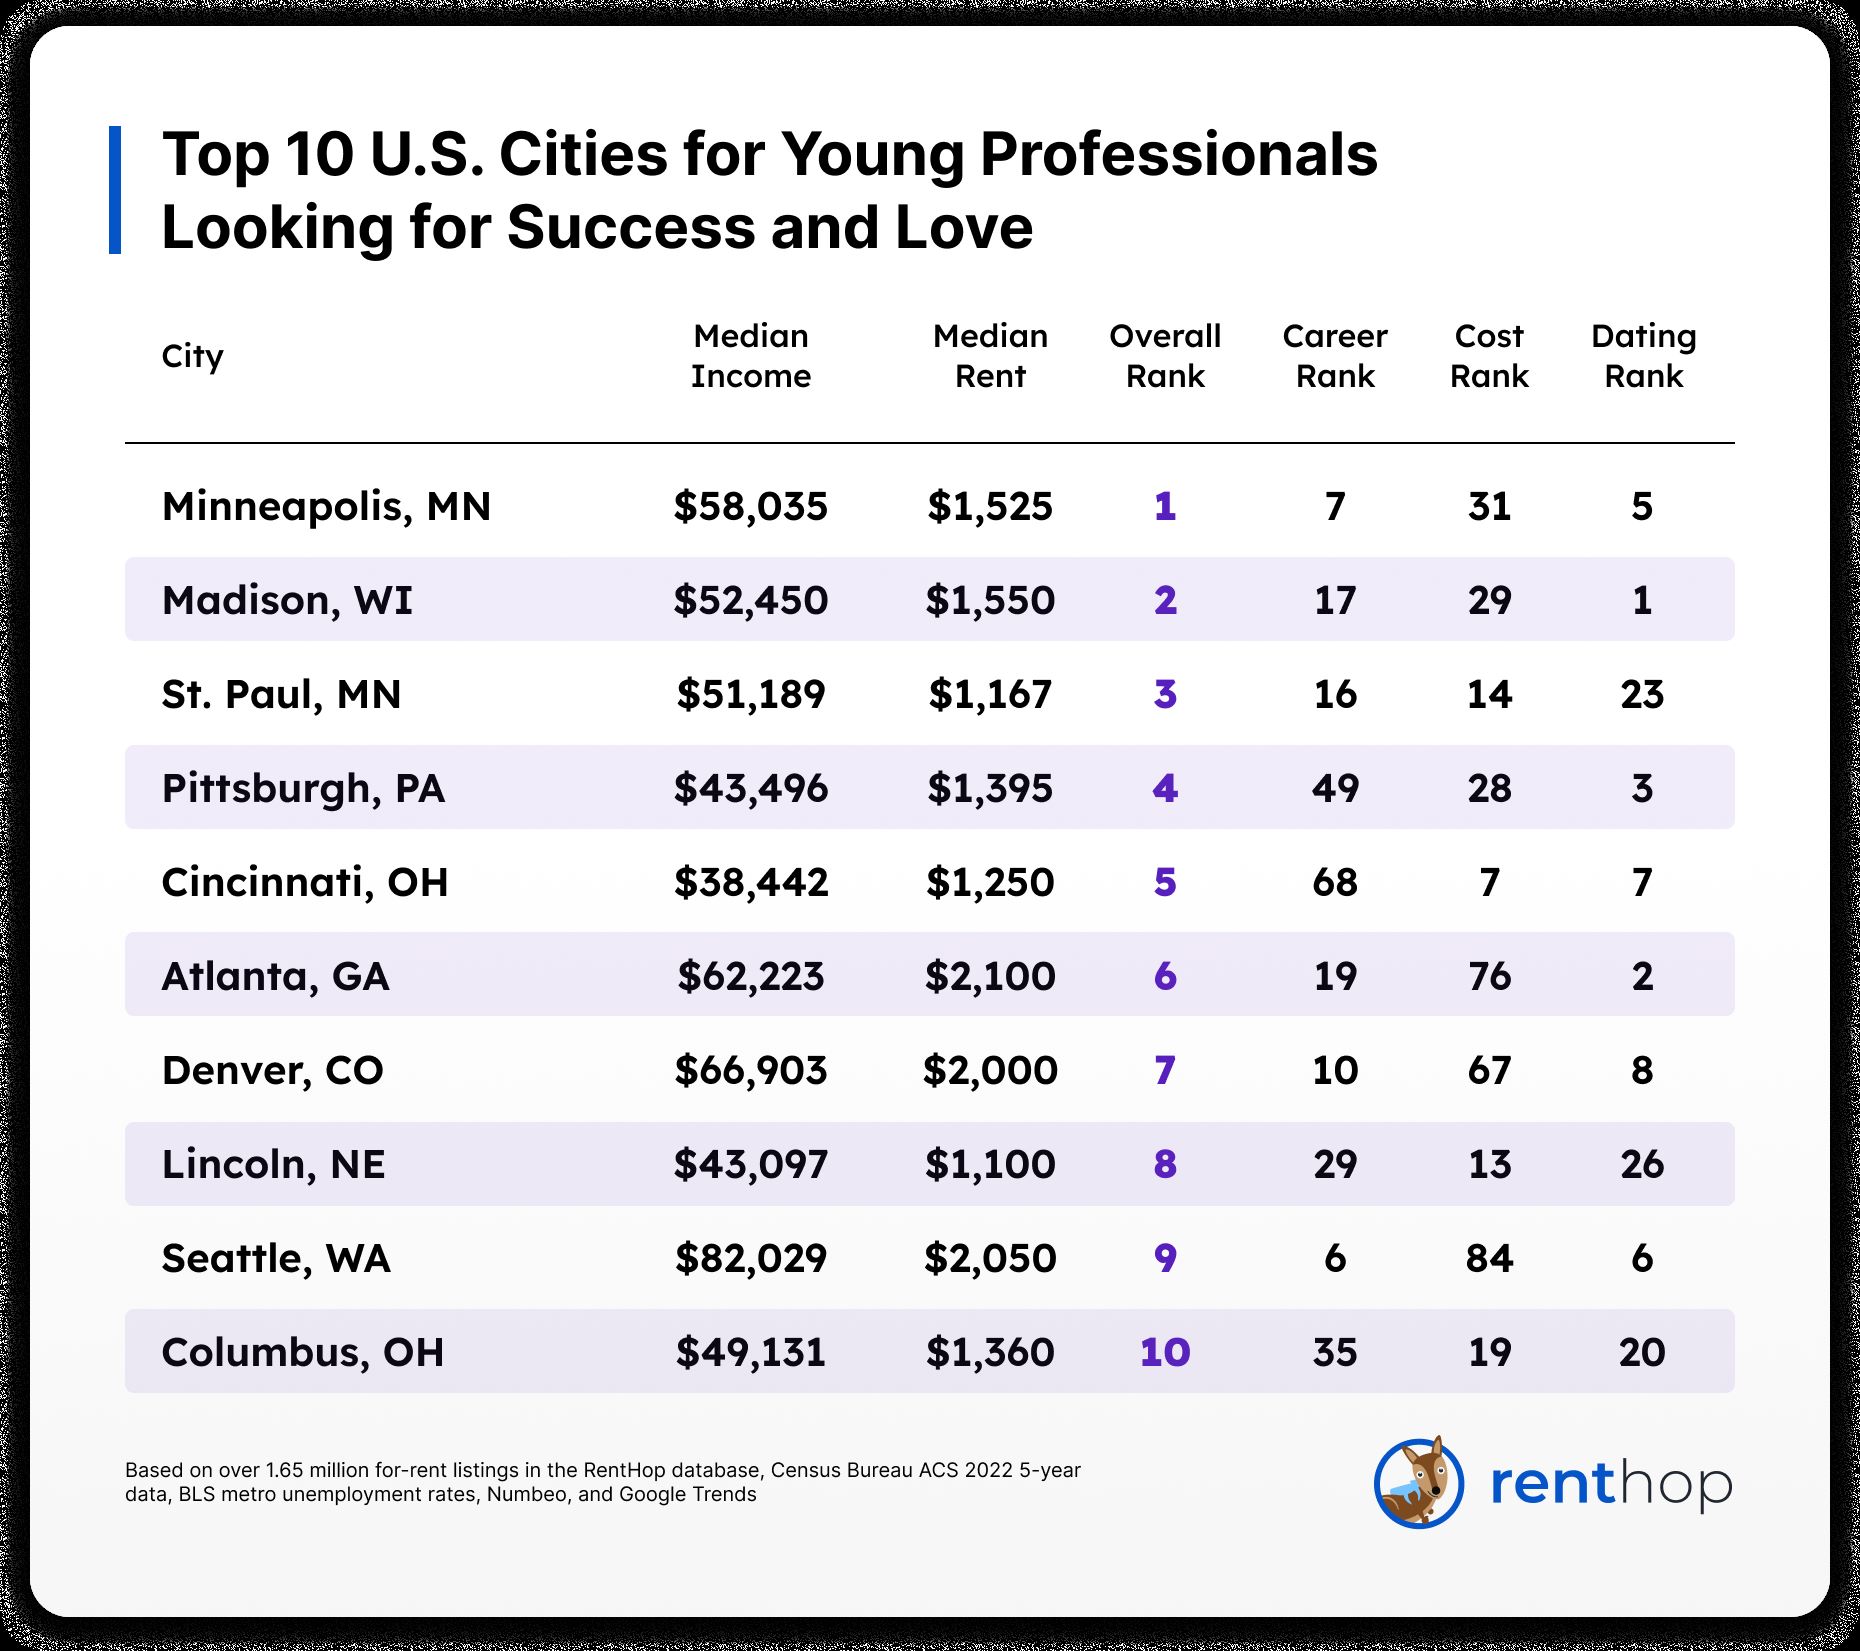 Las 10 mejores ciudades para los jóvenes que buscan éxito y amor (Rent Hop).
